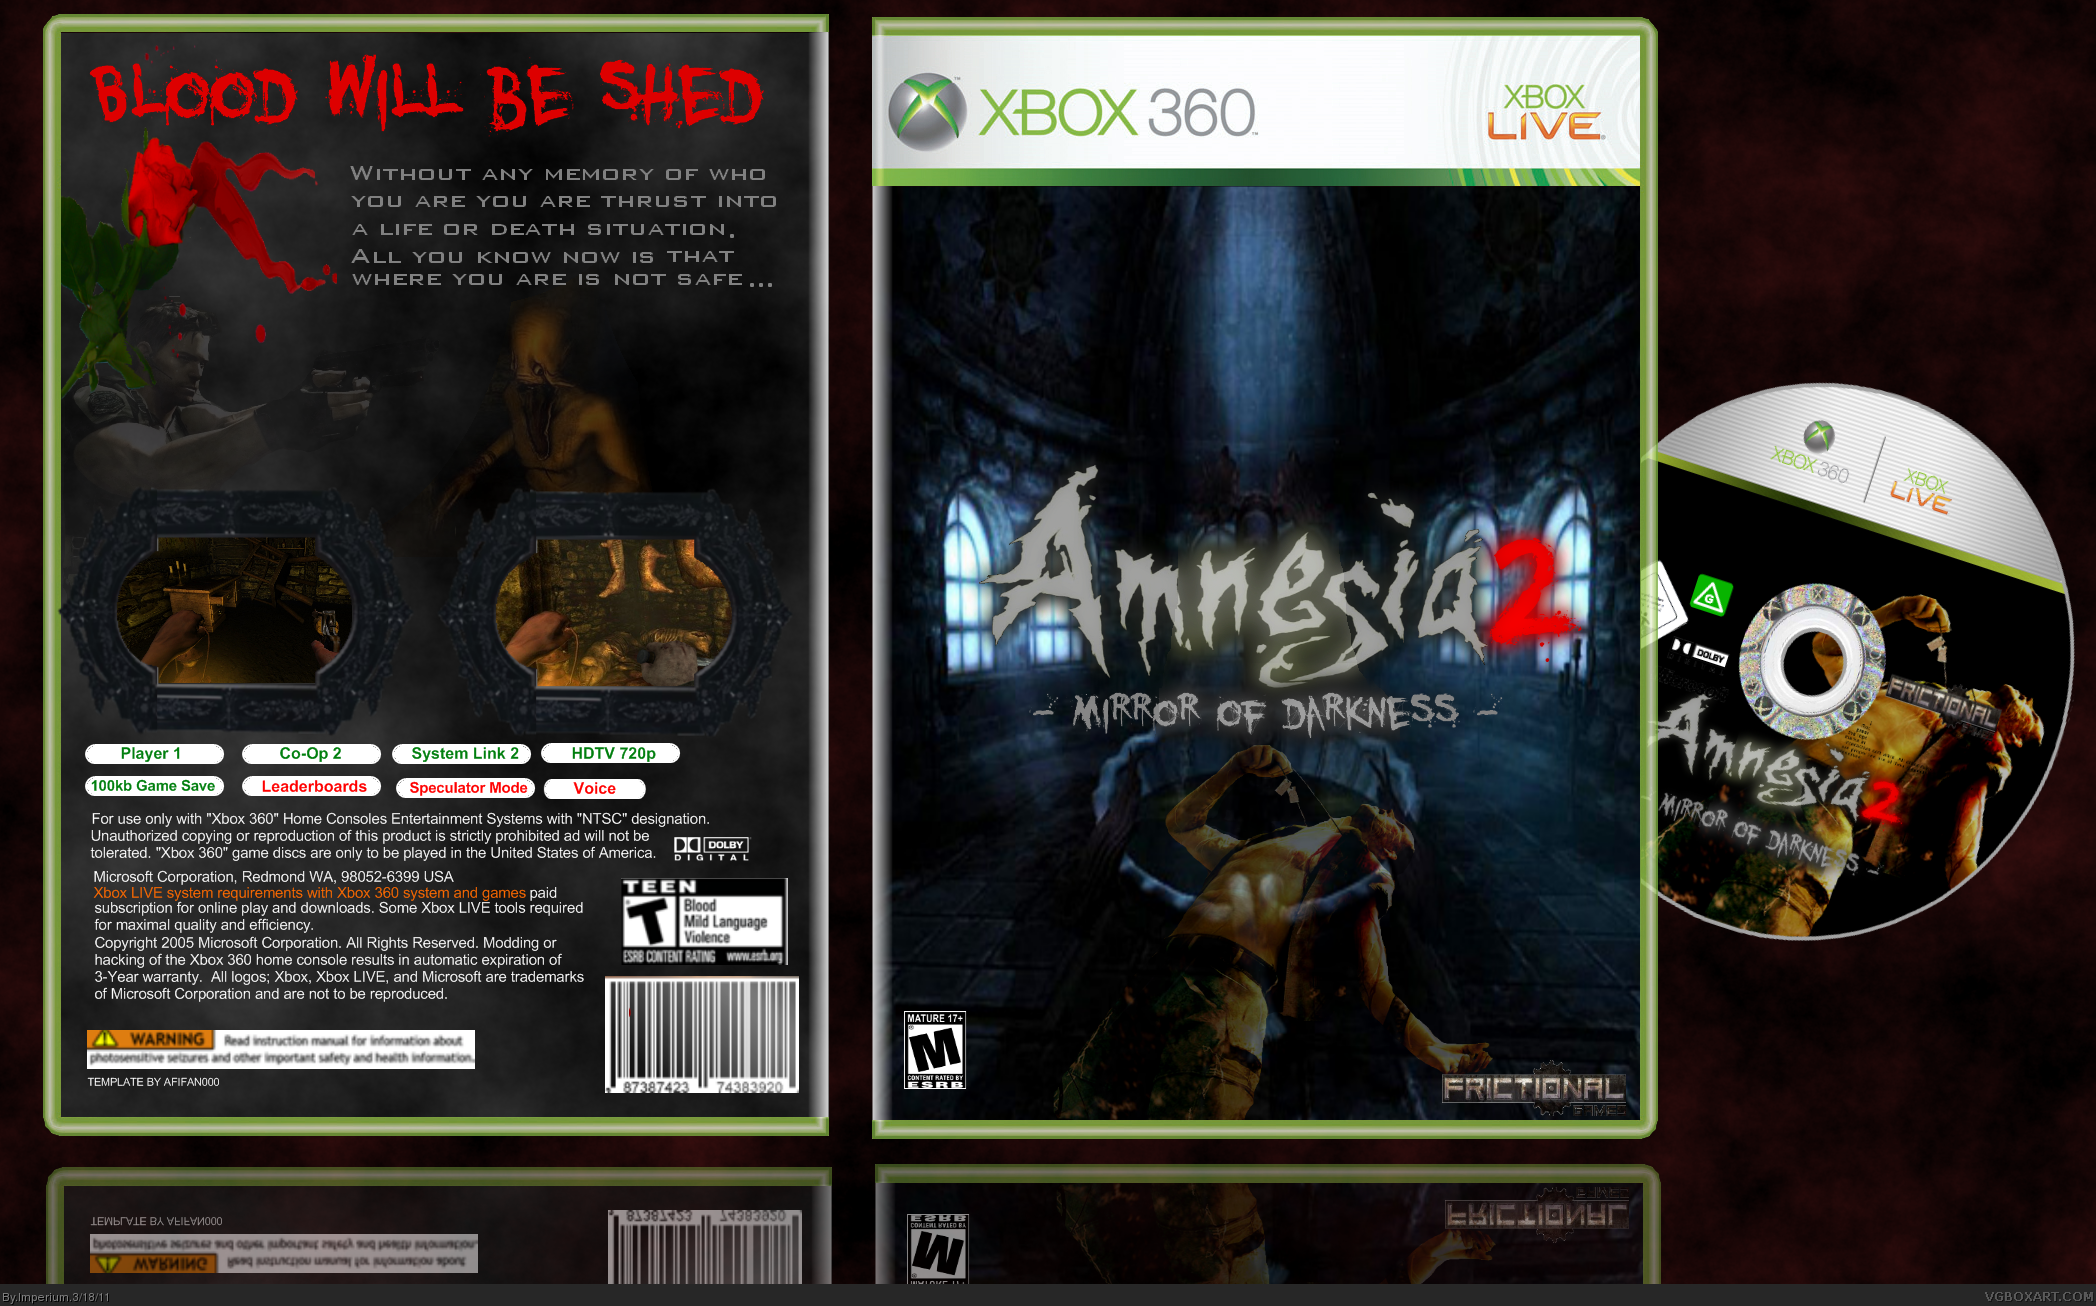 Amnesia 2 -Mirror of darkness- box cover